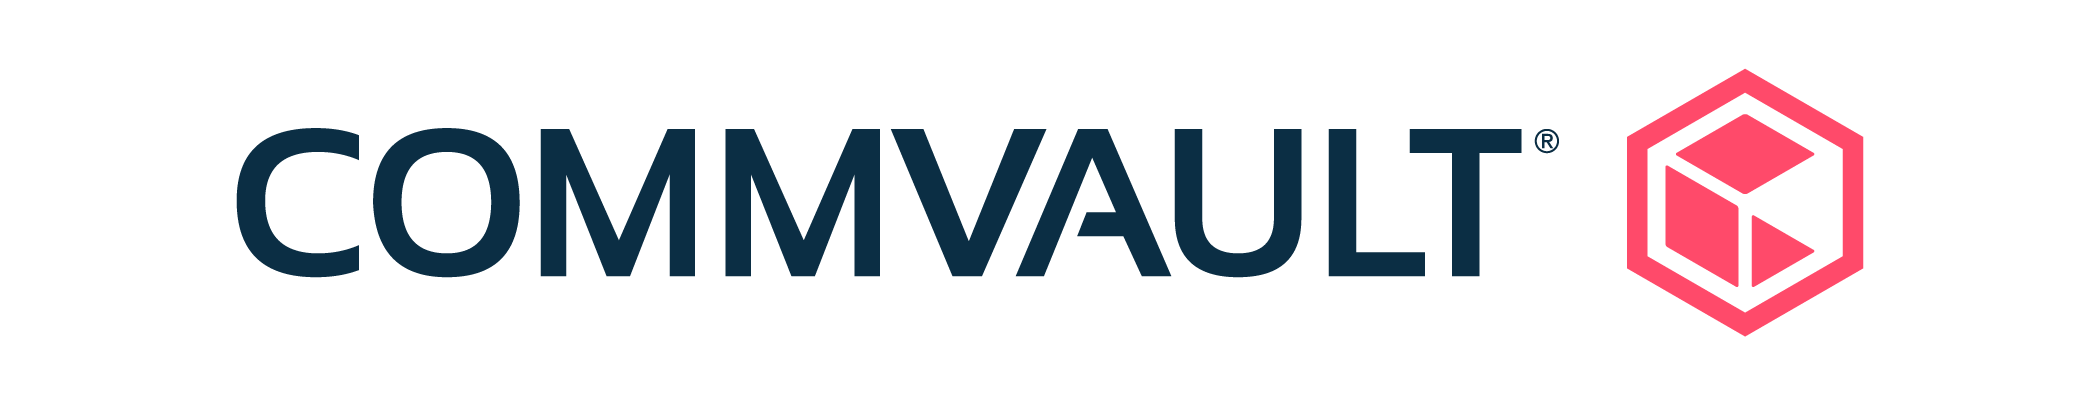 Logotipo de Commvault